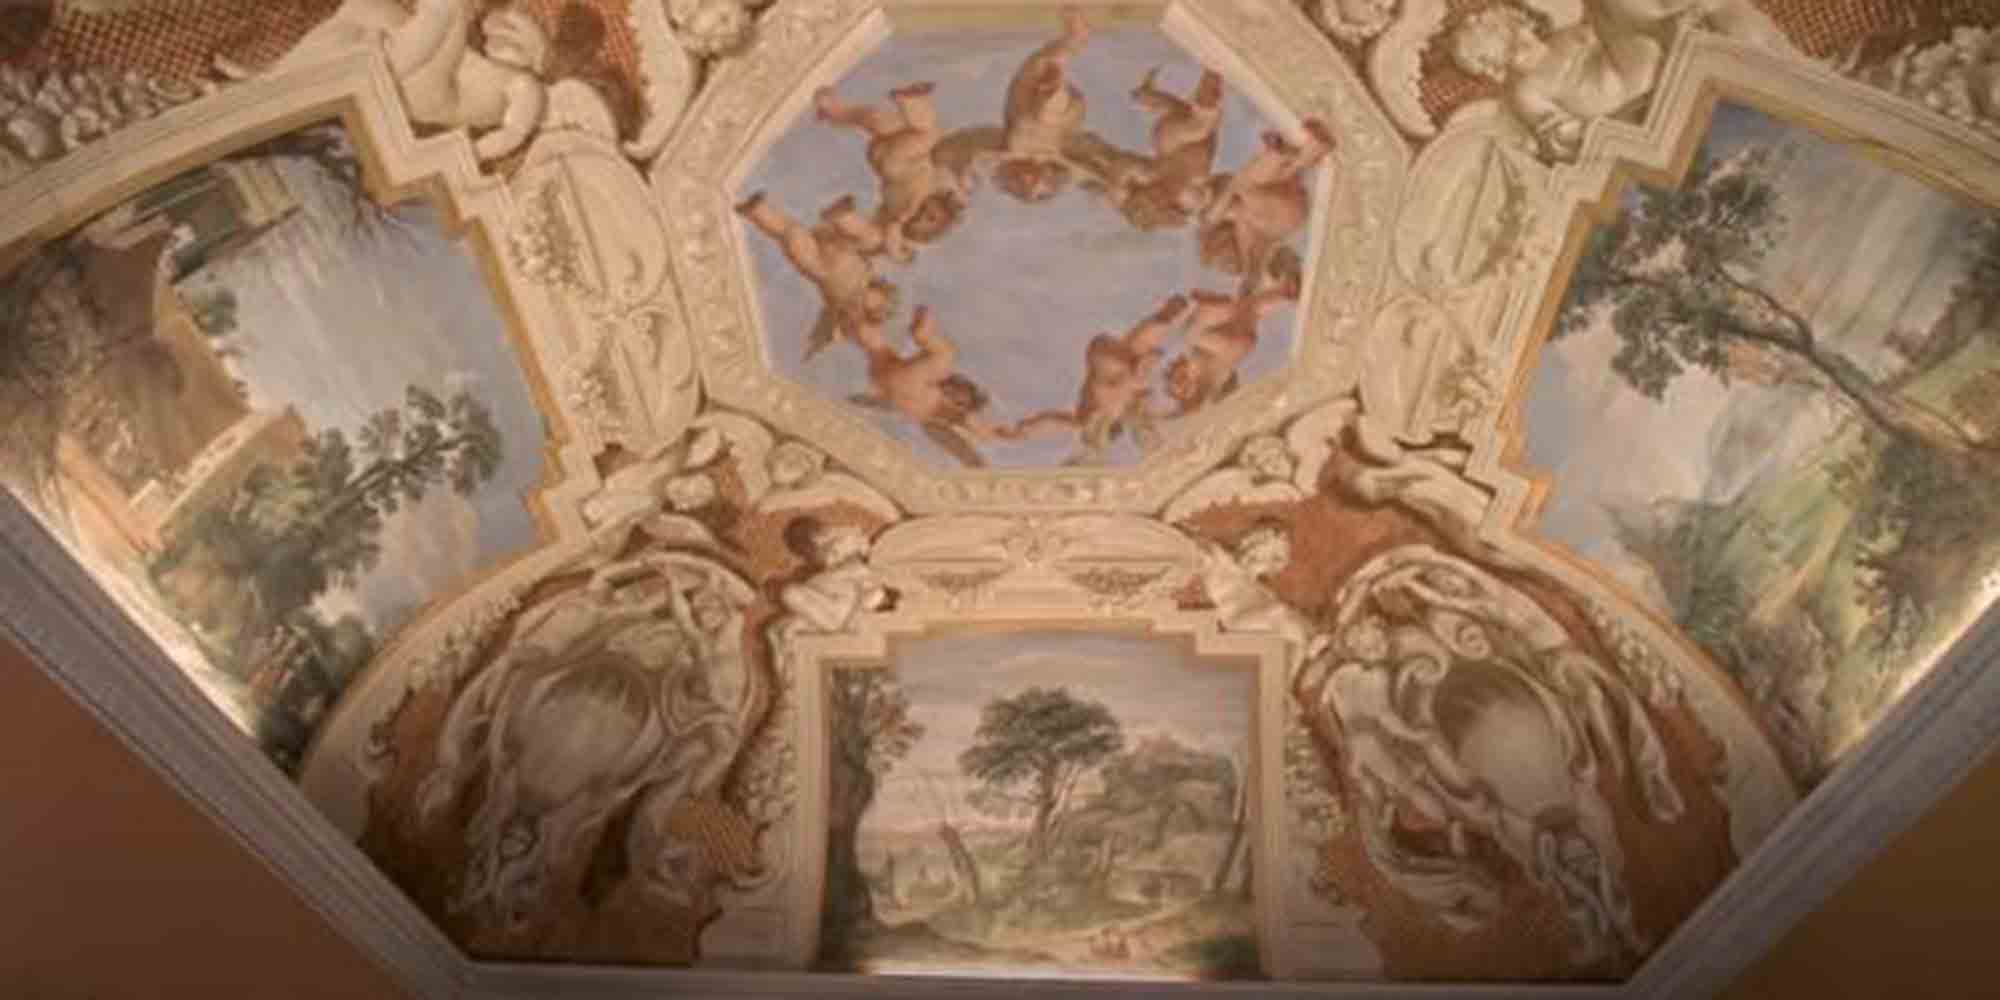 Η εντυπωσιακή νωπογραφία οροφής του ζωγράφου Καραβάτσο, σε βίλα στη Ρώμη